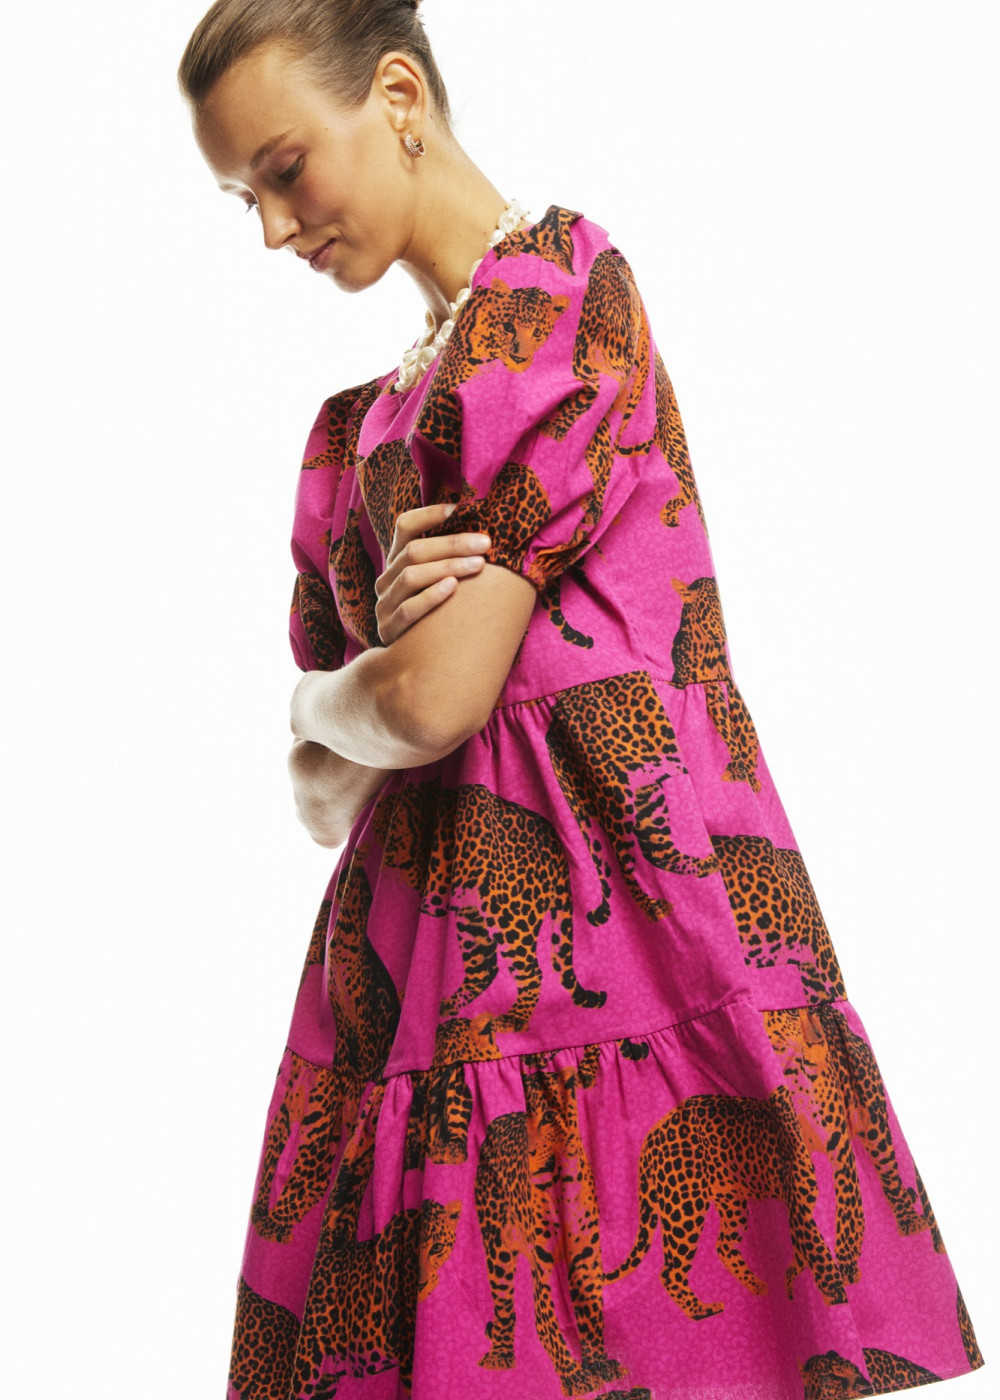 Tiger Pattern Mini Dress